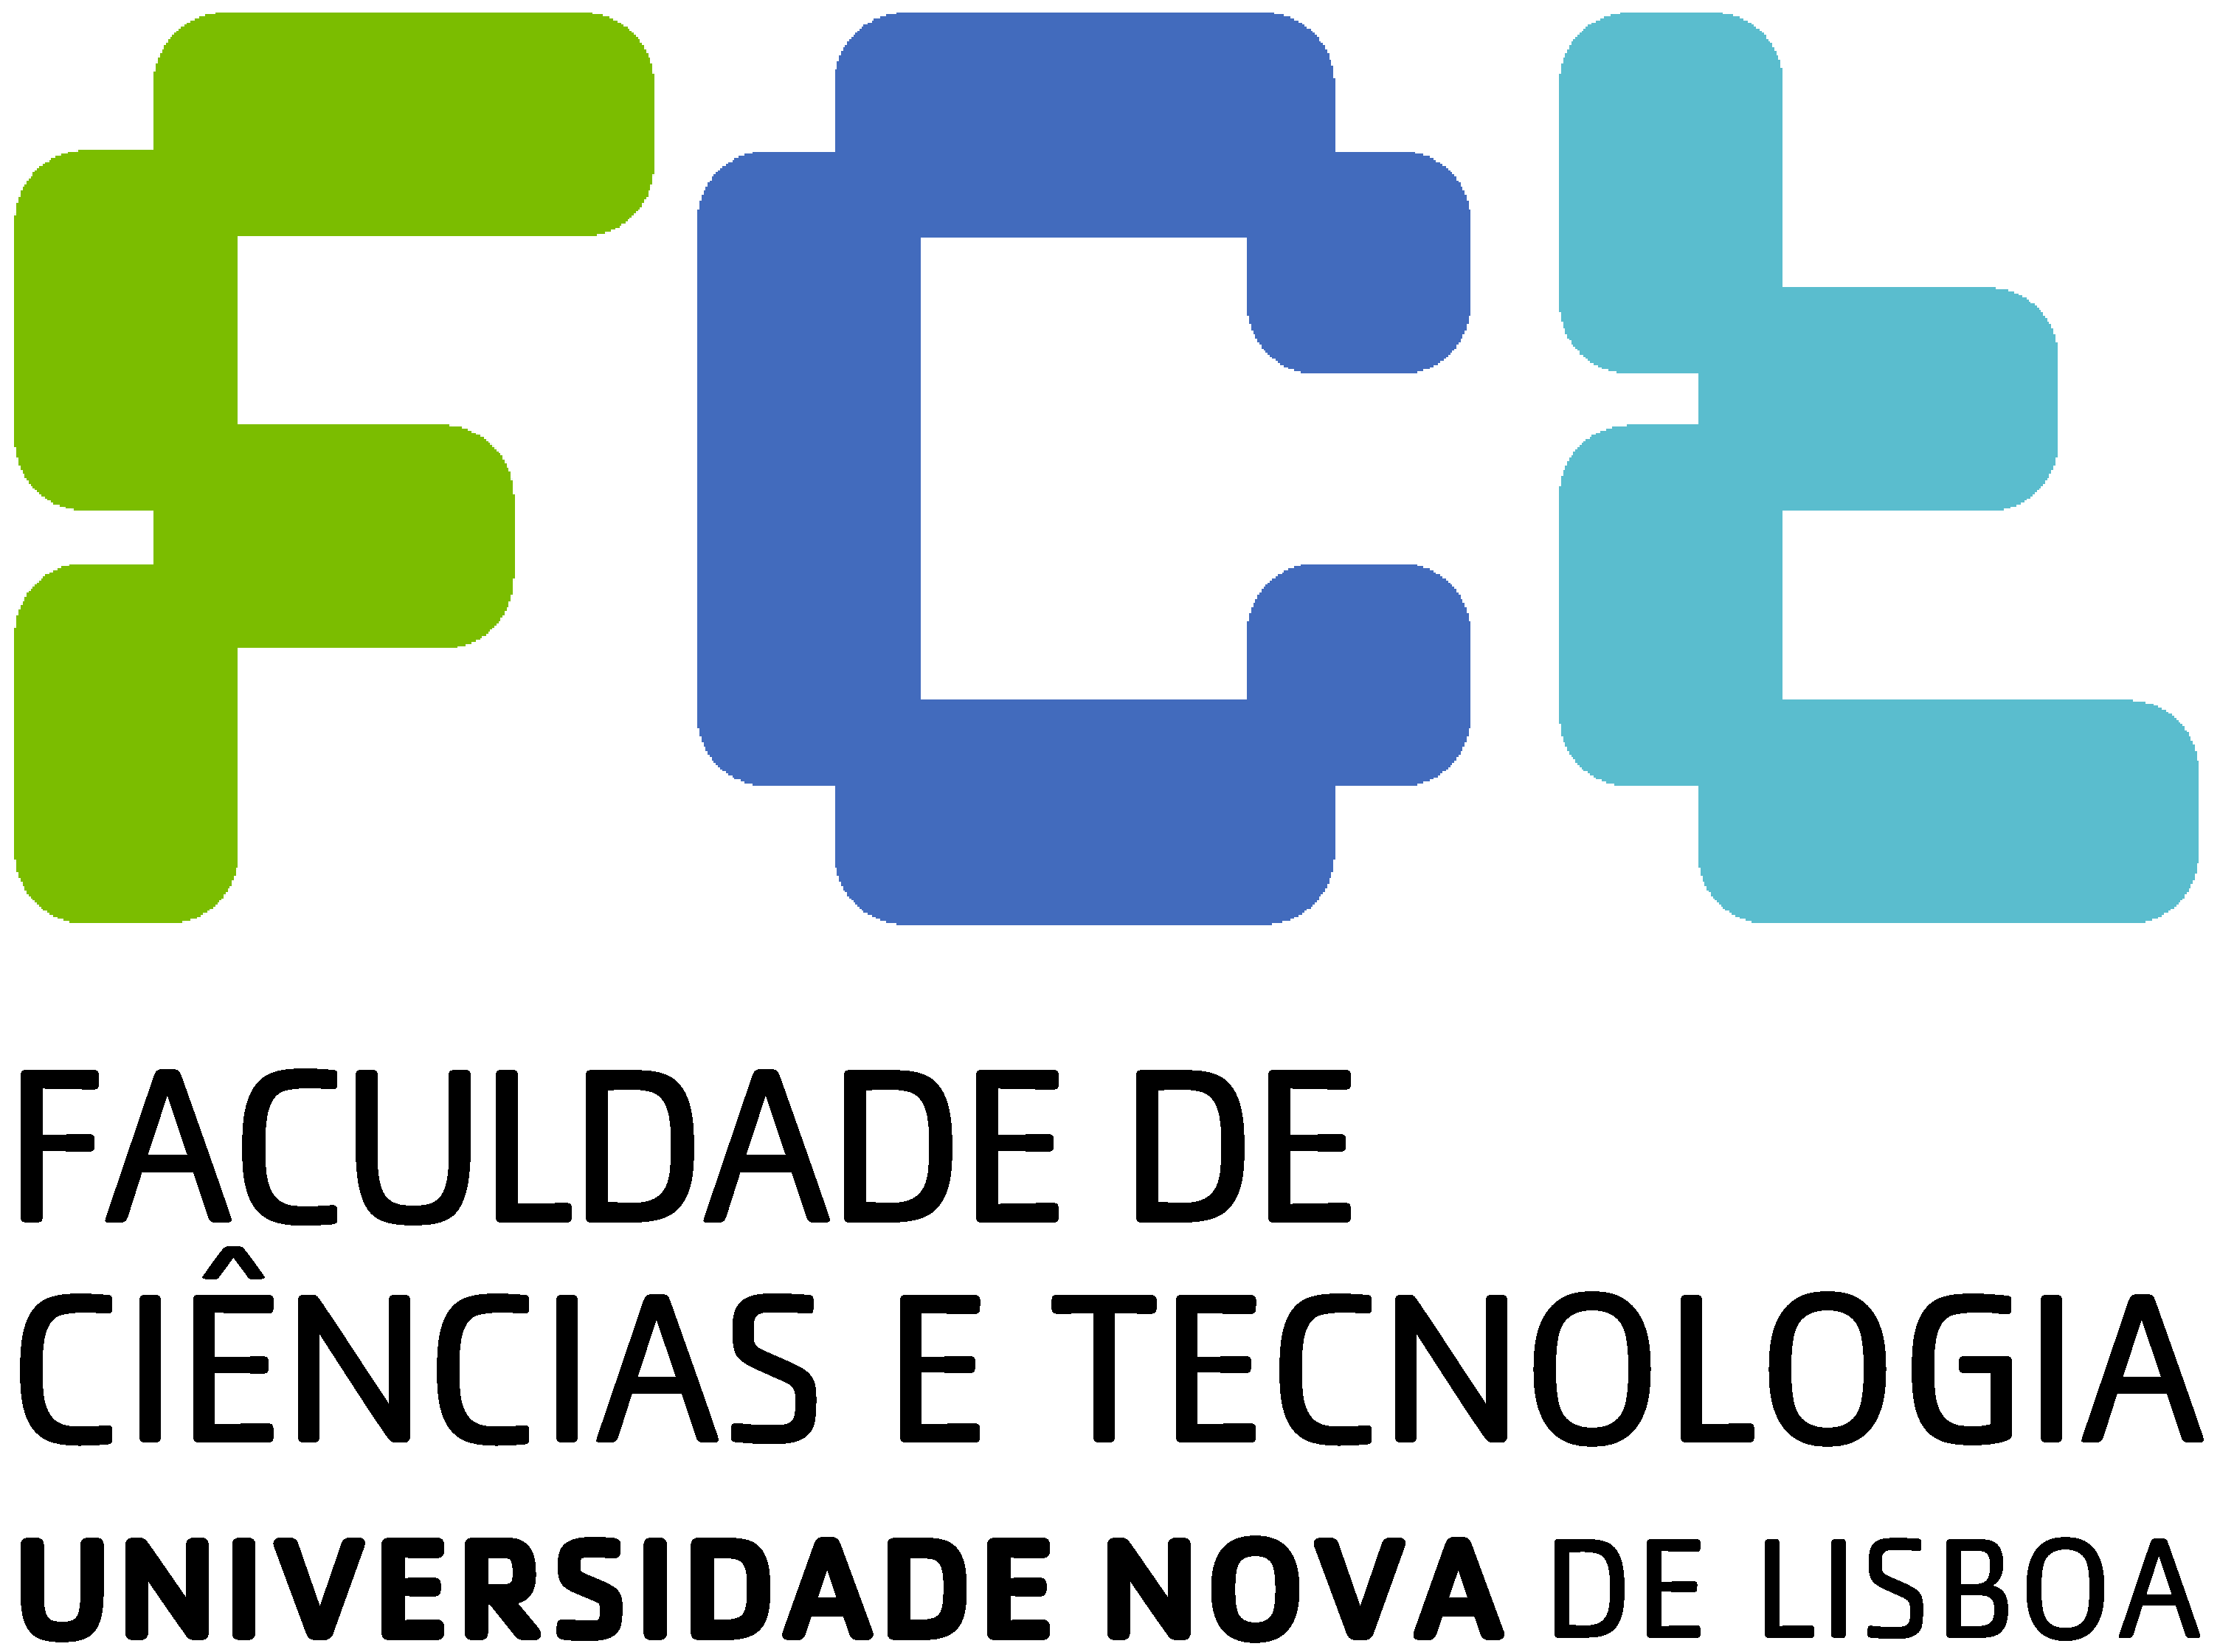 FCT-UNL: Faculdade de Ciências e Tecnologia | NOVA Universidade de Lisboa (HEI)